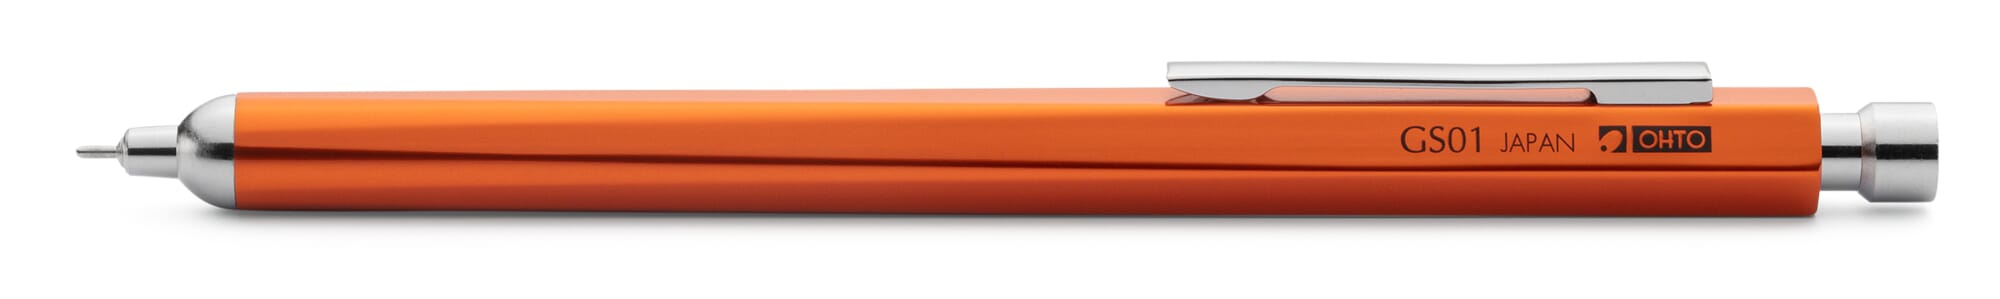 blauschreibende Premium Kugelschreiberminen für einfaches & weiches schreiben mehrfarbiger Kugelschreiber StillRich® weiße Metall Kugelschreiber 10 Stück Kugelschreiber hochwertig 